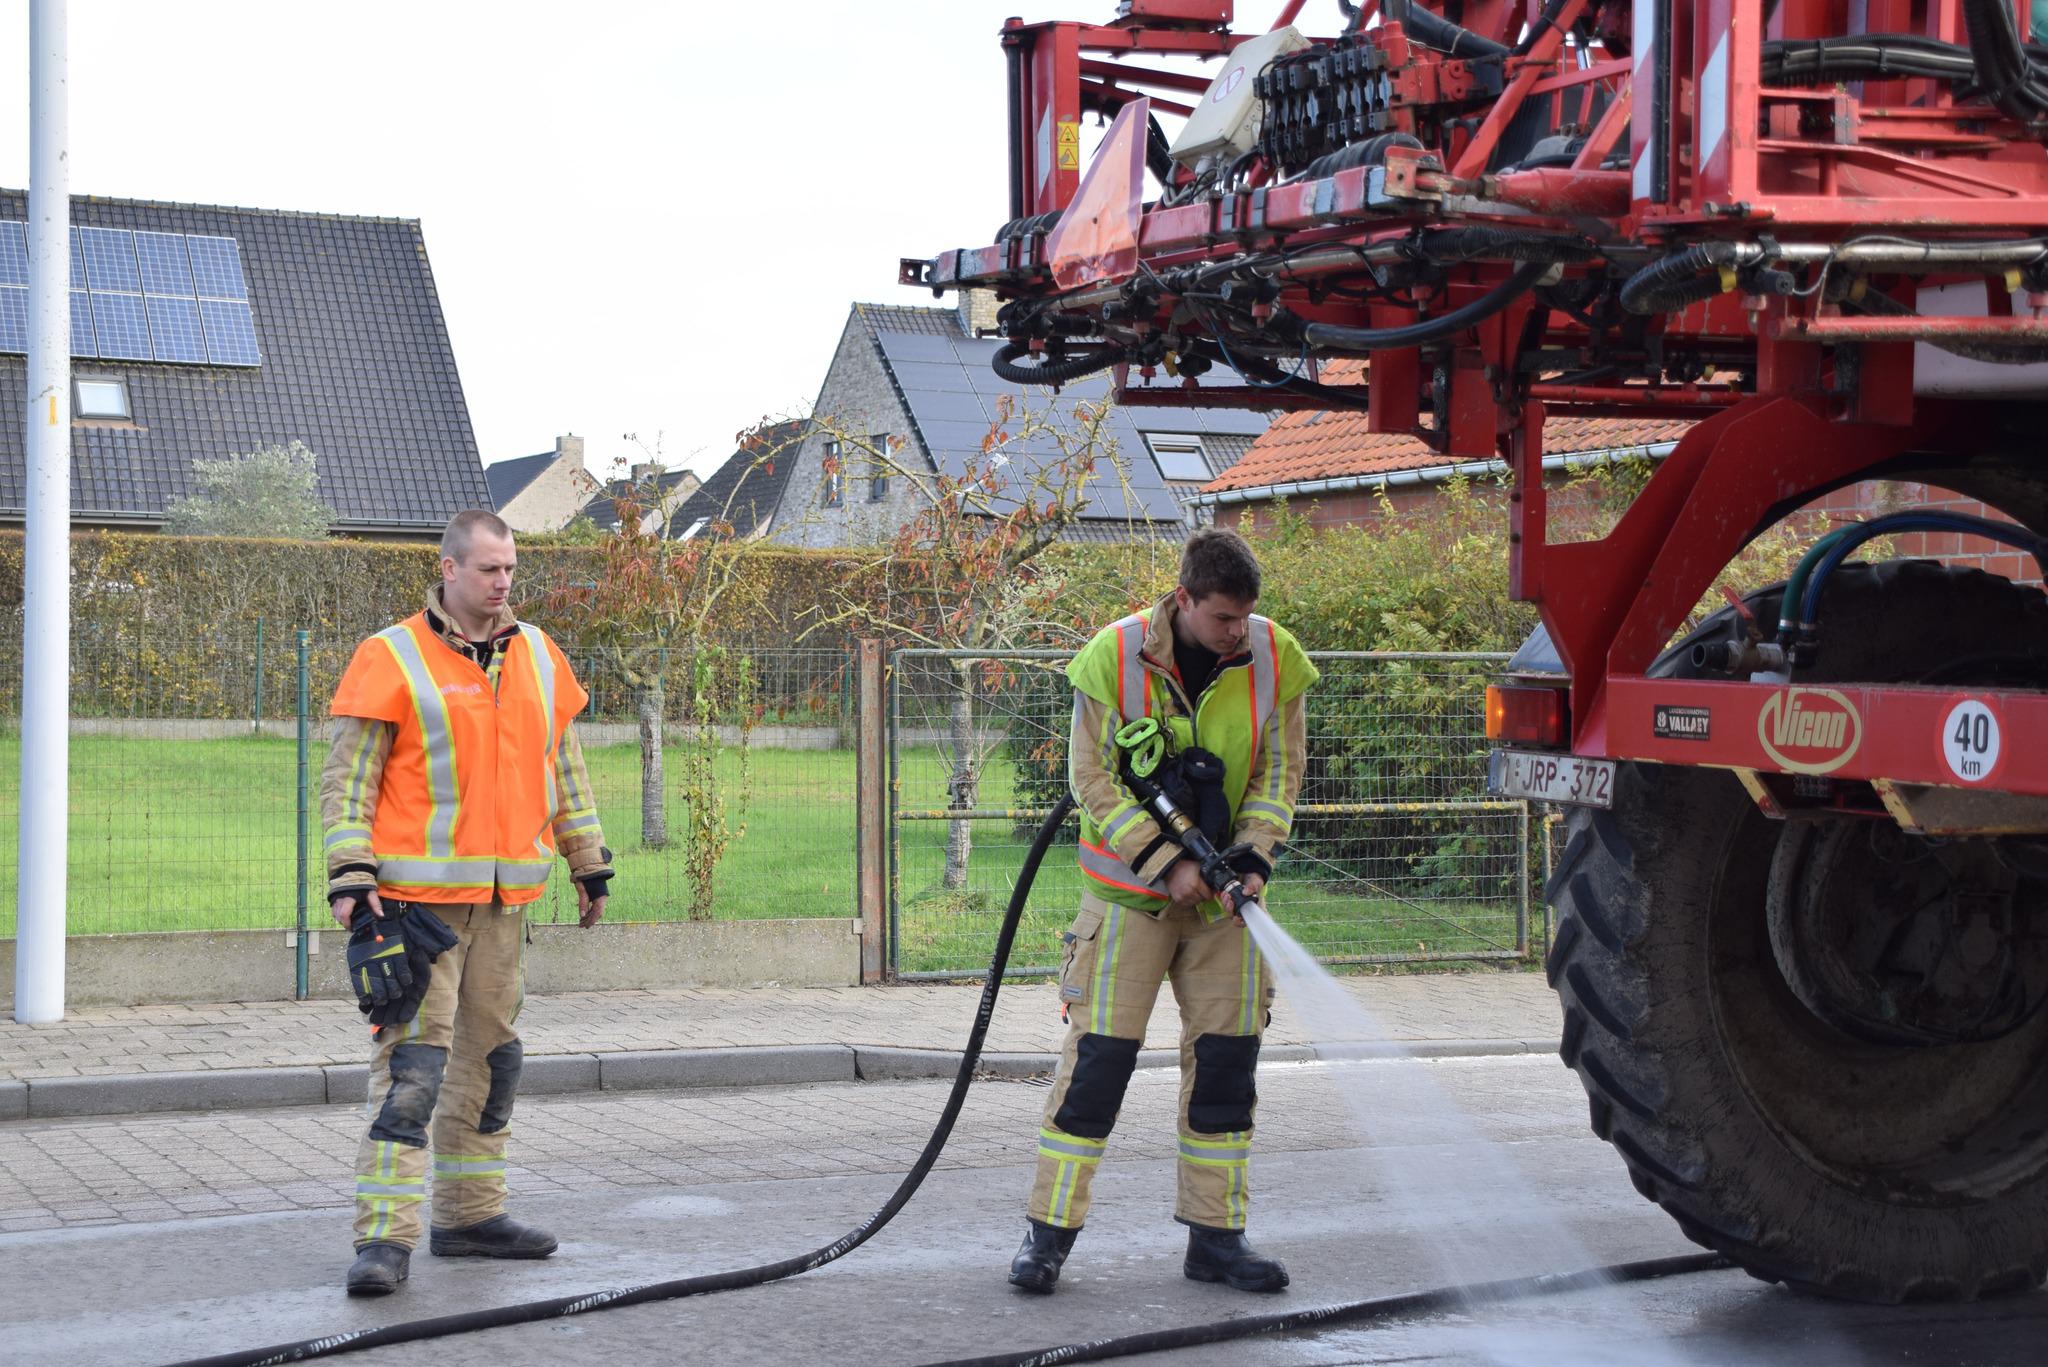 Brandweer ruimt lekkende olie op van landbouwmachine in Lo-Reninge